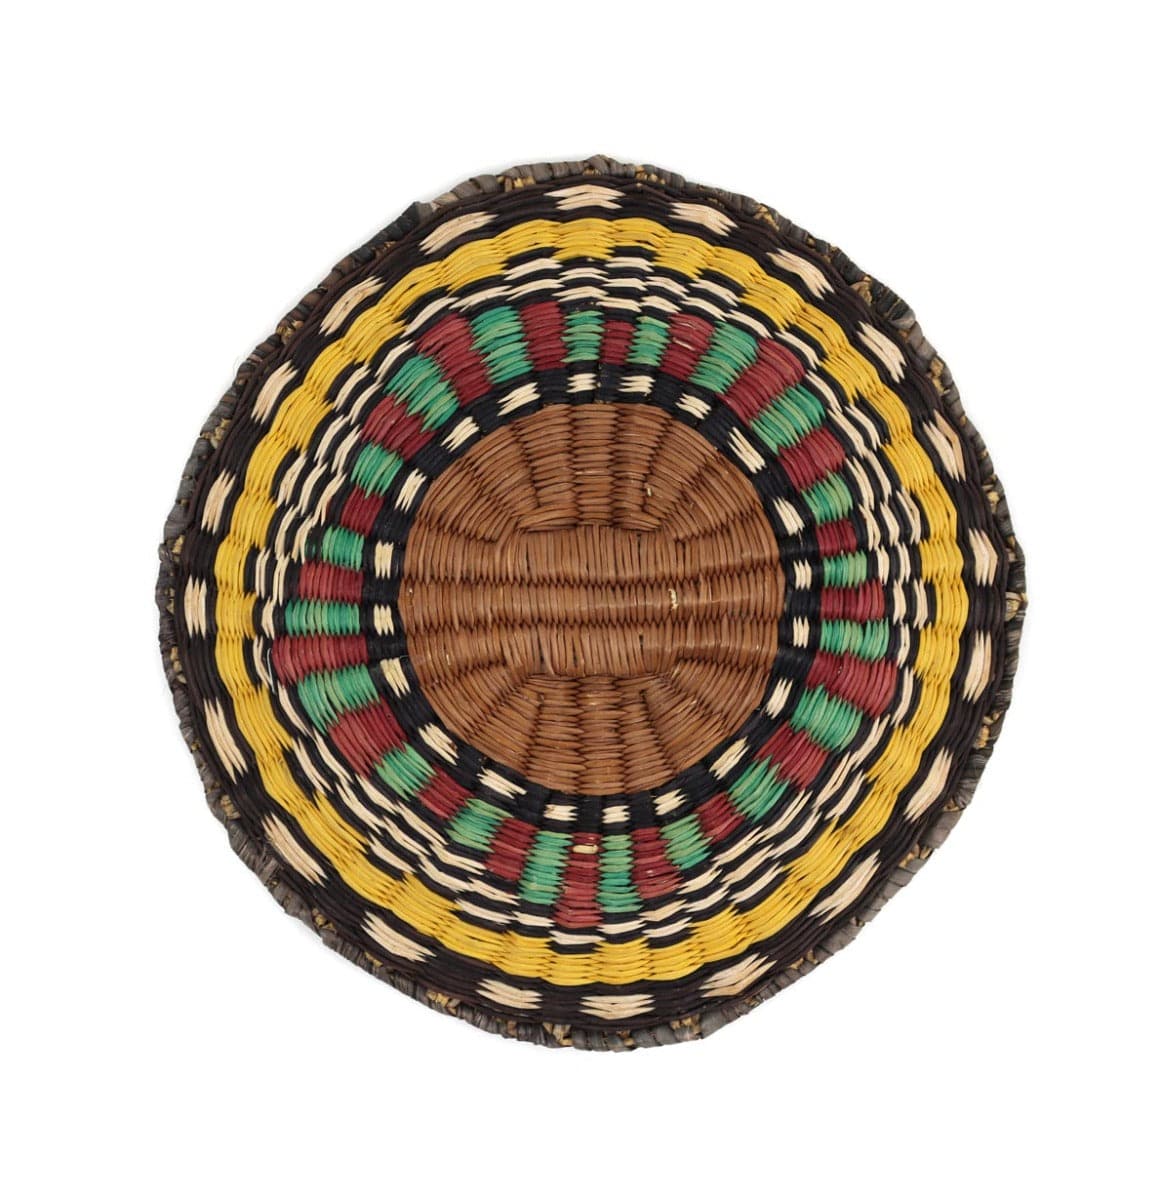 Hopi Polychrome Wicker Plaque c. 1960s, 9.5" diameter (SK3349) 2